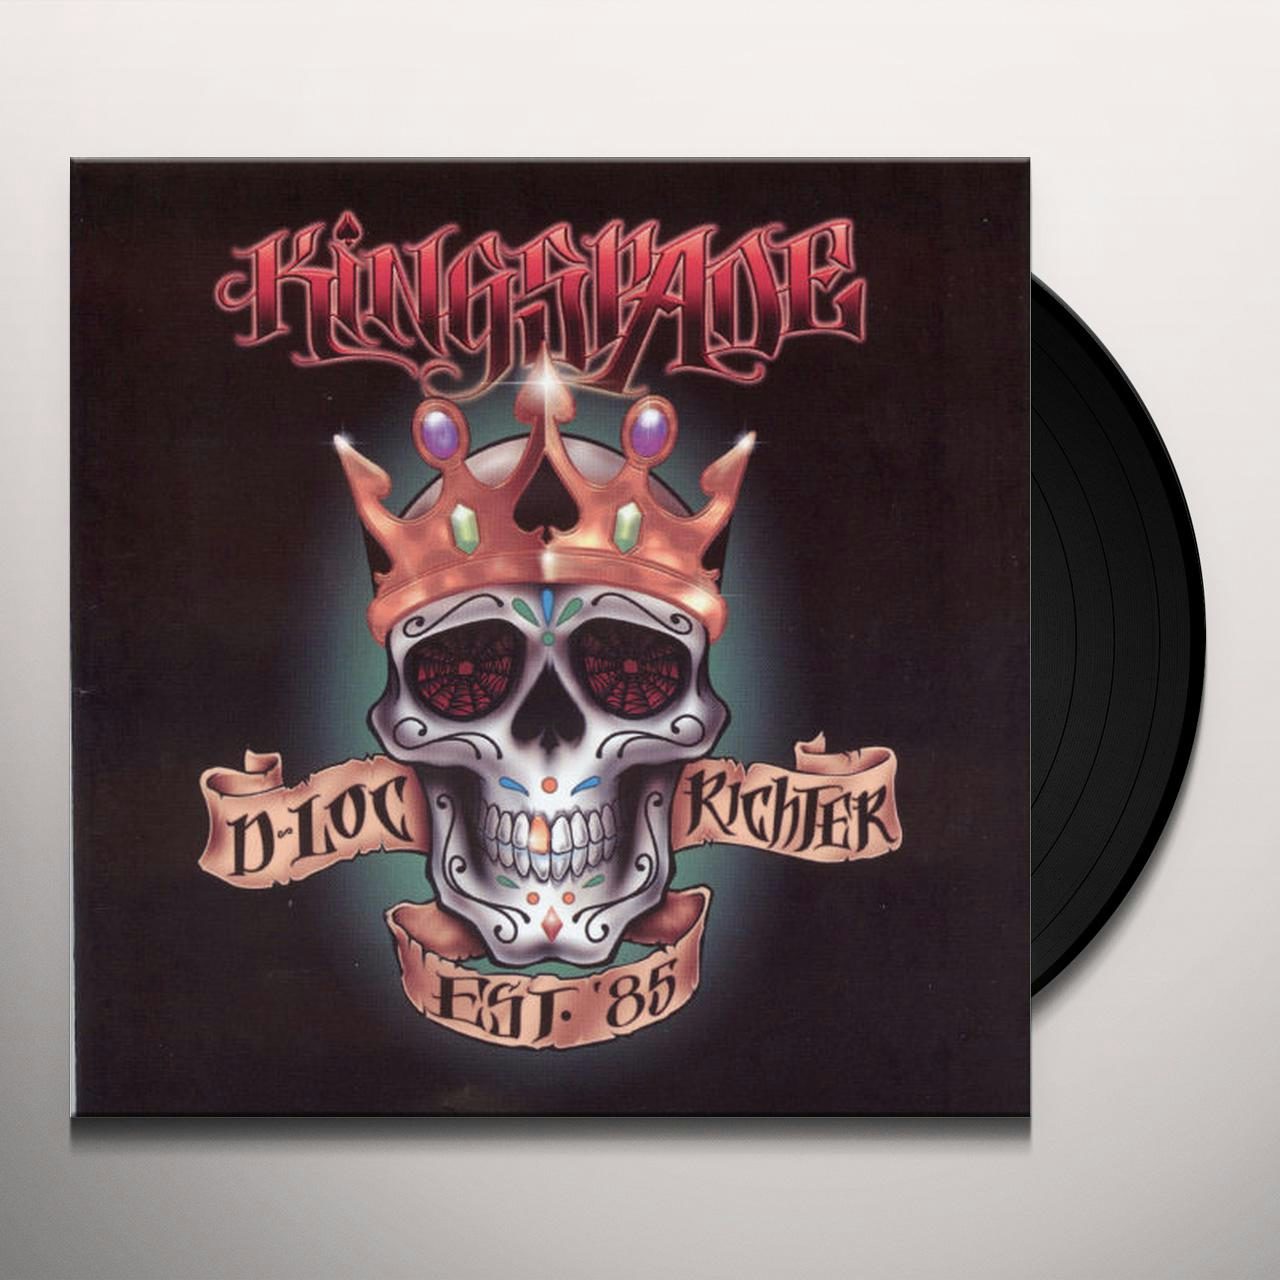 Kingspade - Vinyl Record